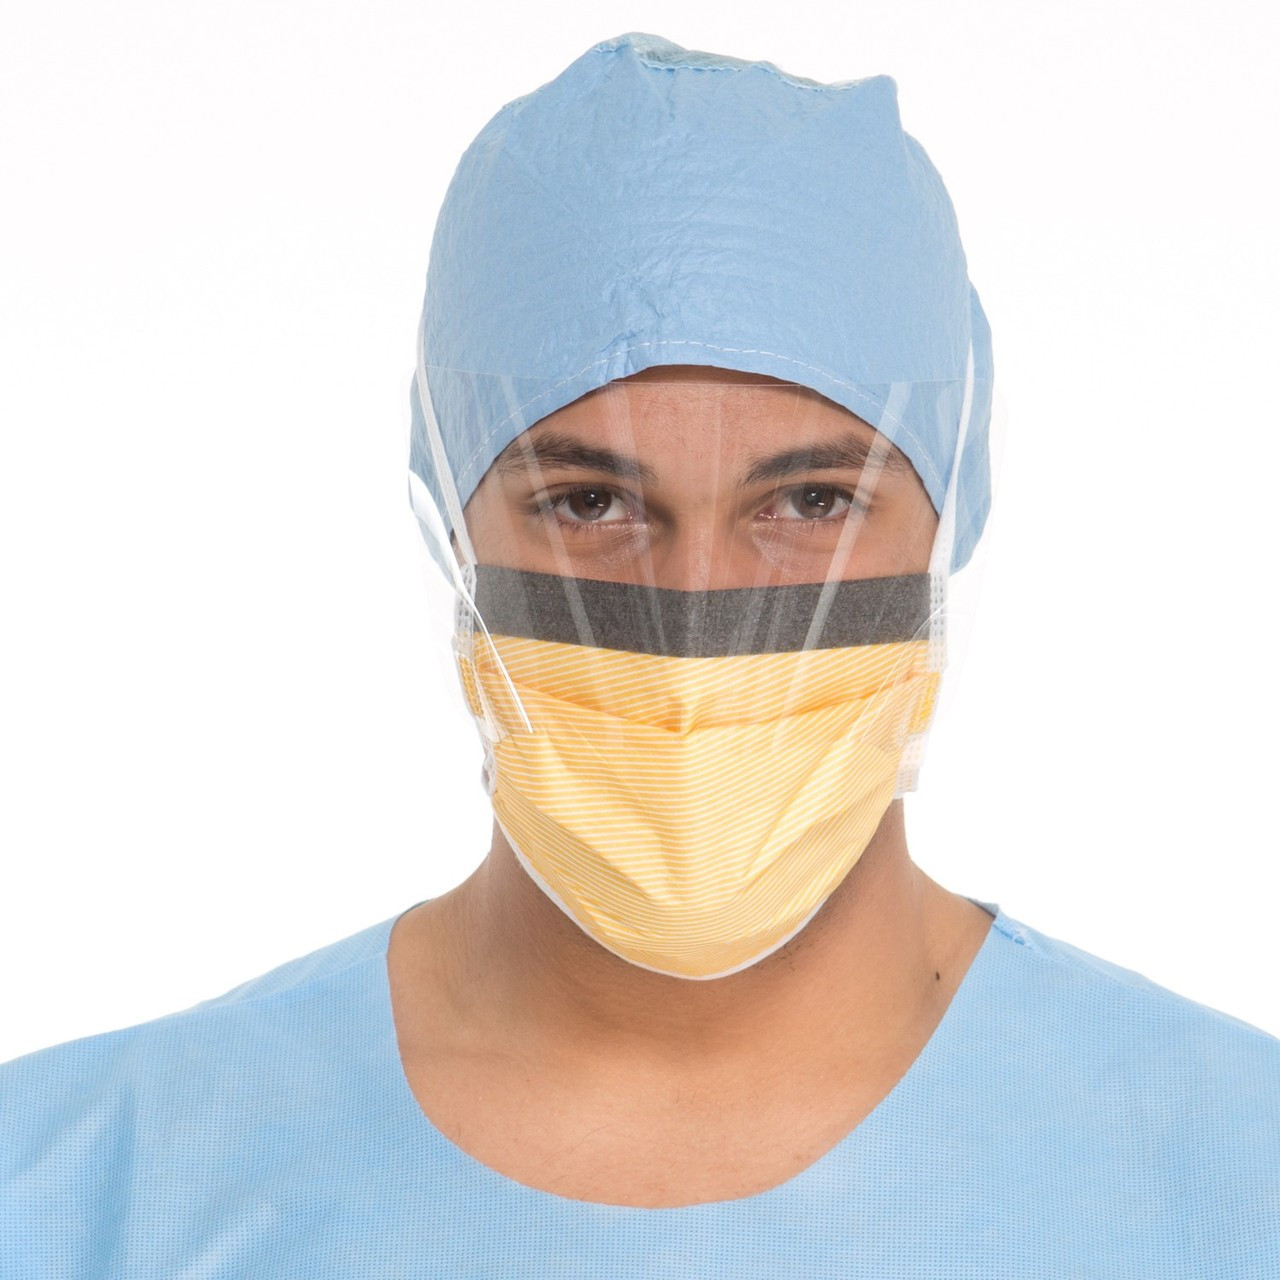 Surgical Mask with Visor | USAMedicalSurgical.com